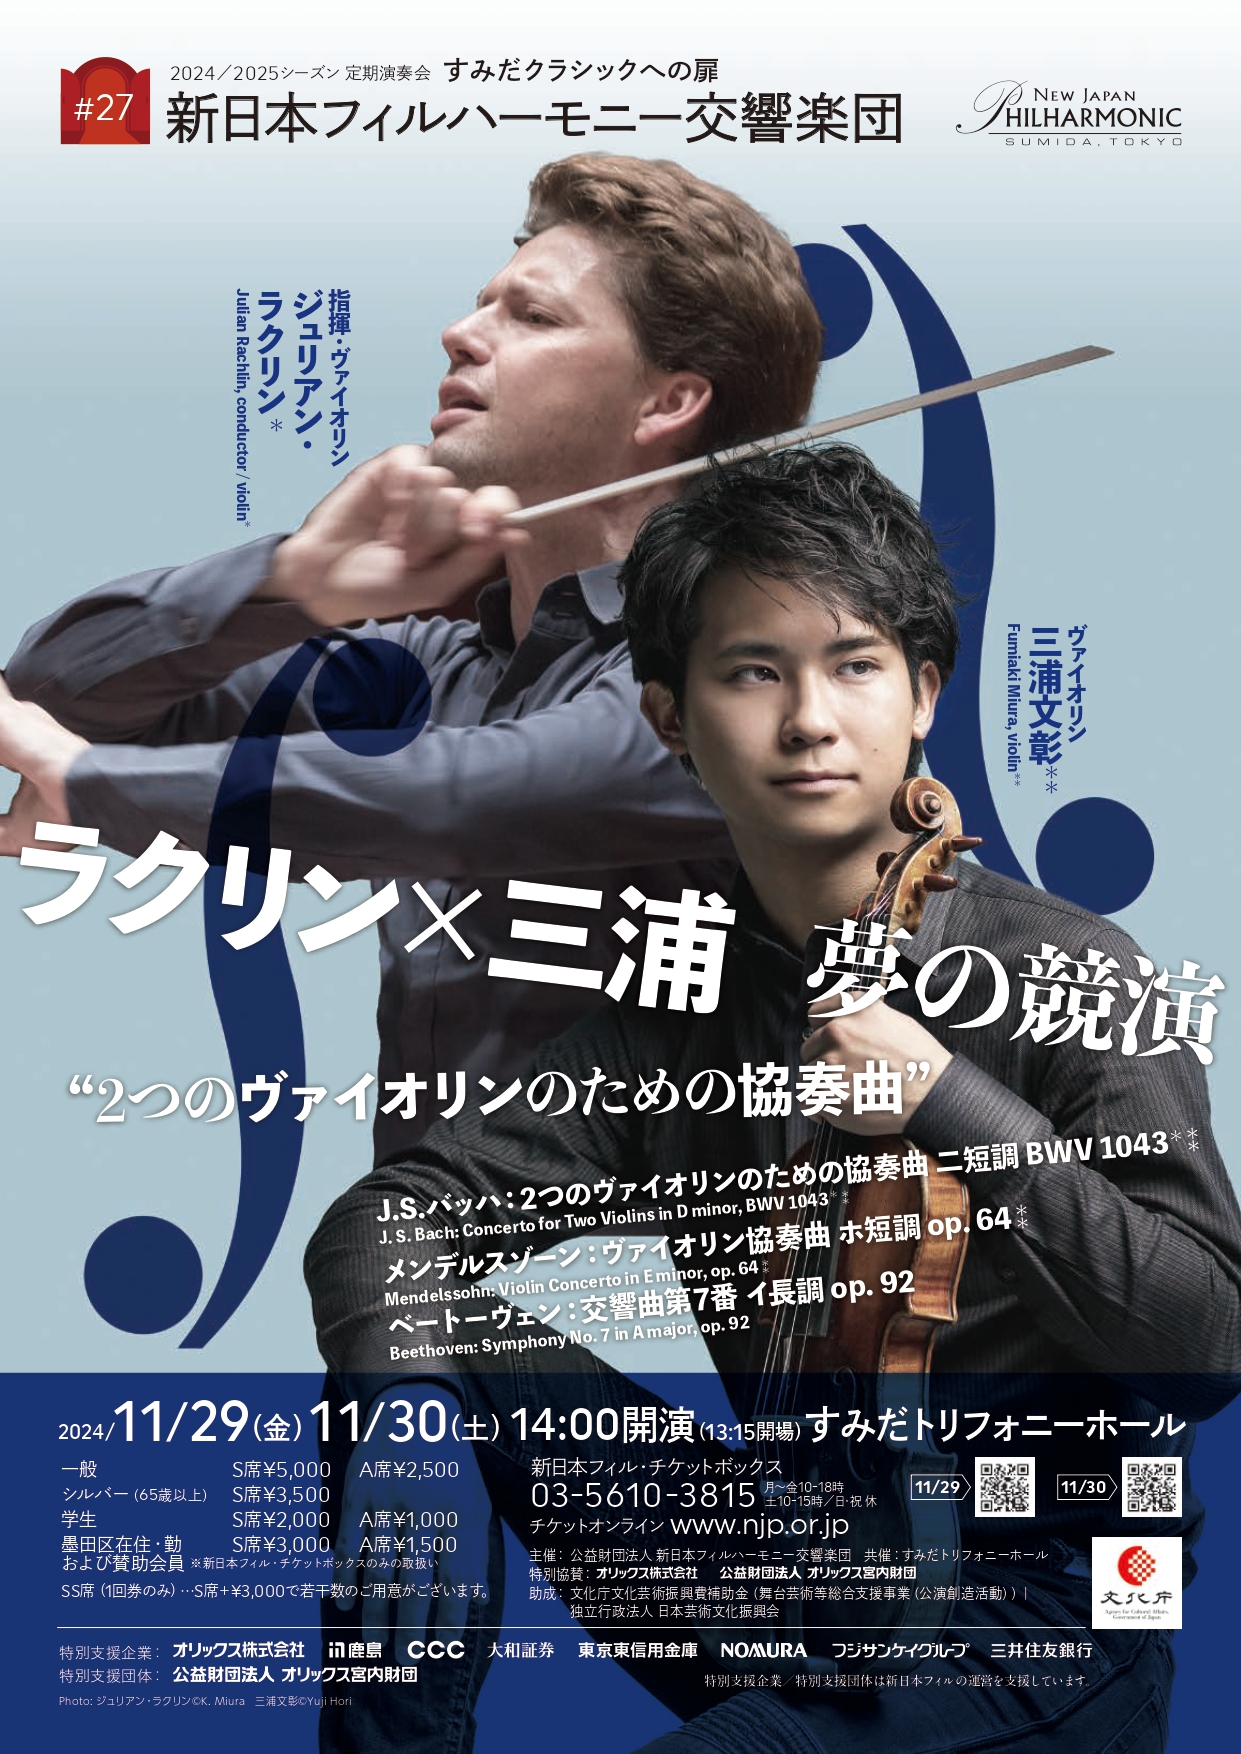 すみだクラシックへの扉 #27（金） | [公式]新日本フィルハーモニー交響楽団—New Japan Philharmonic—